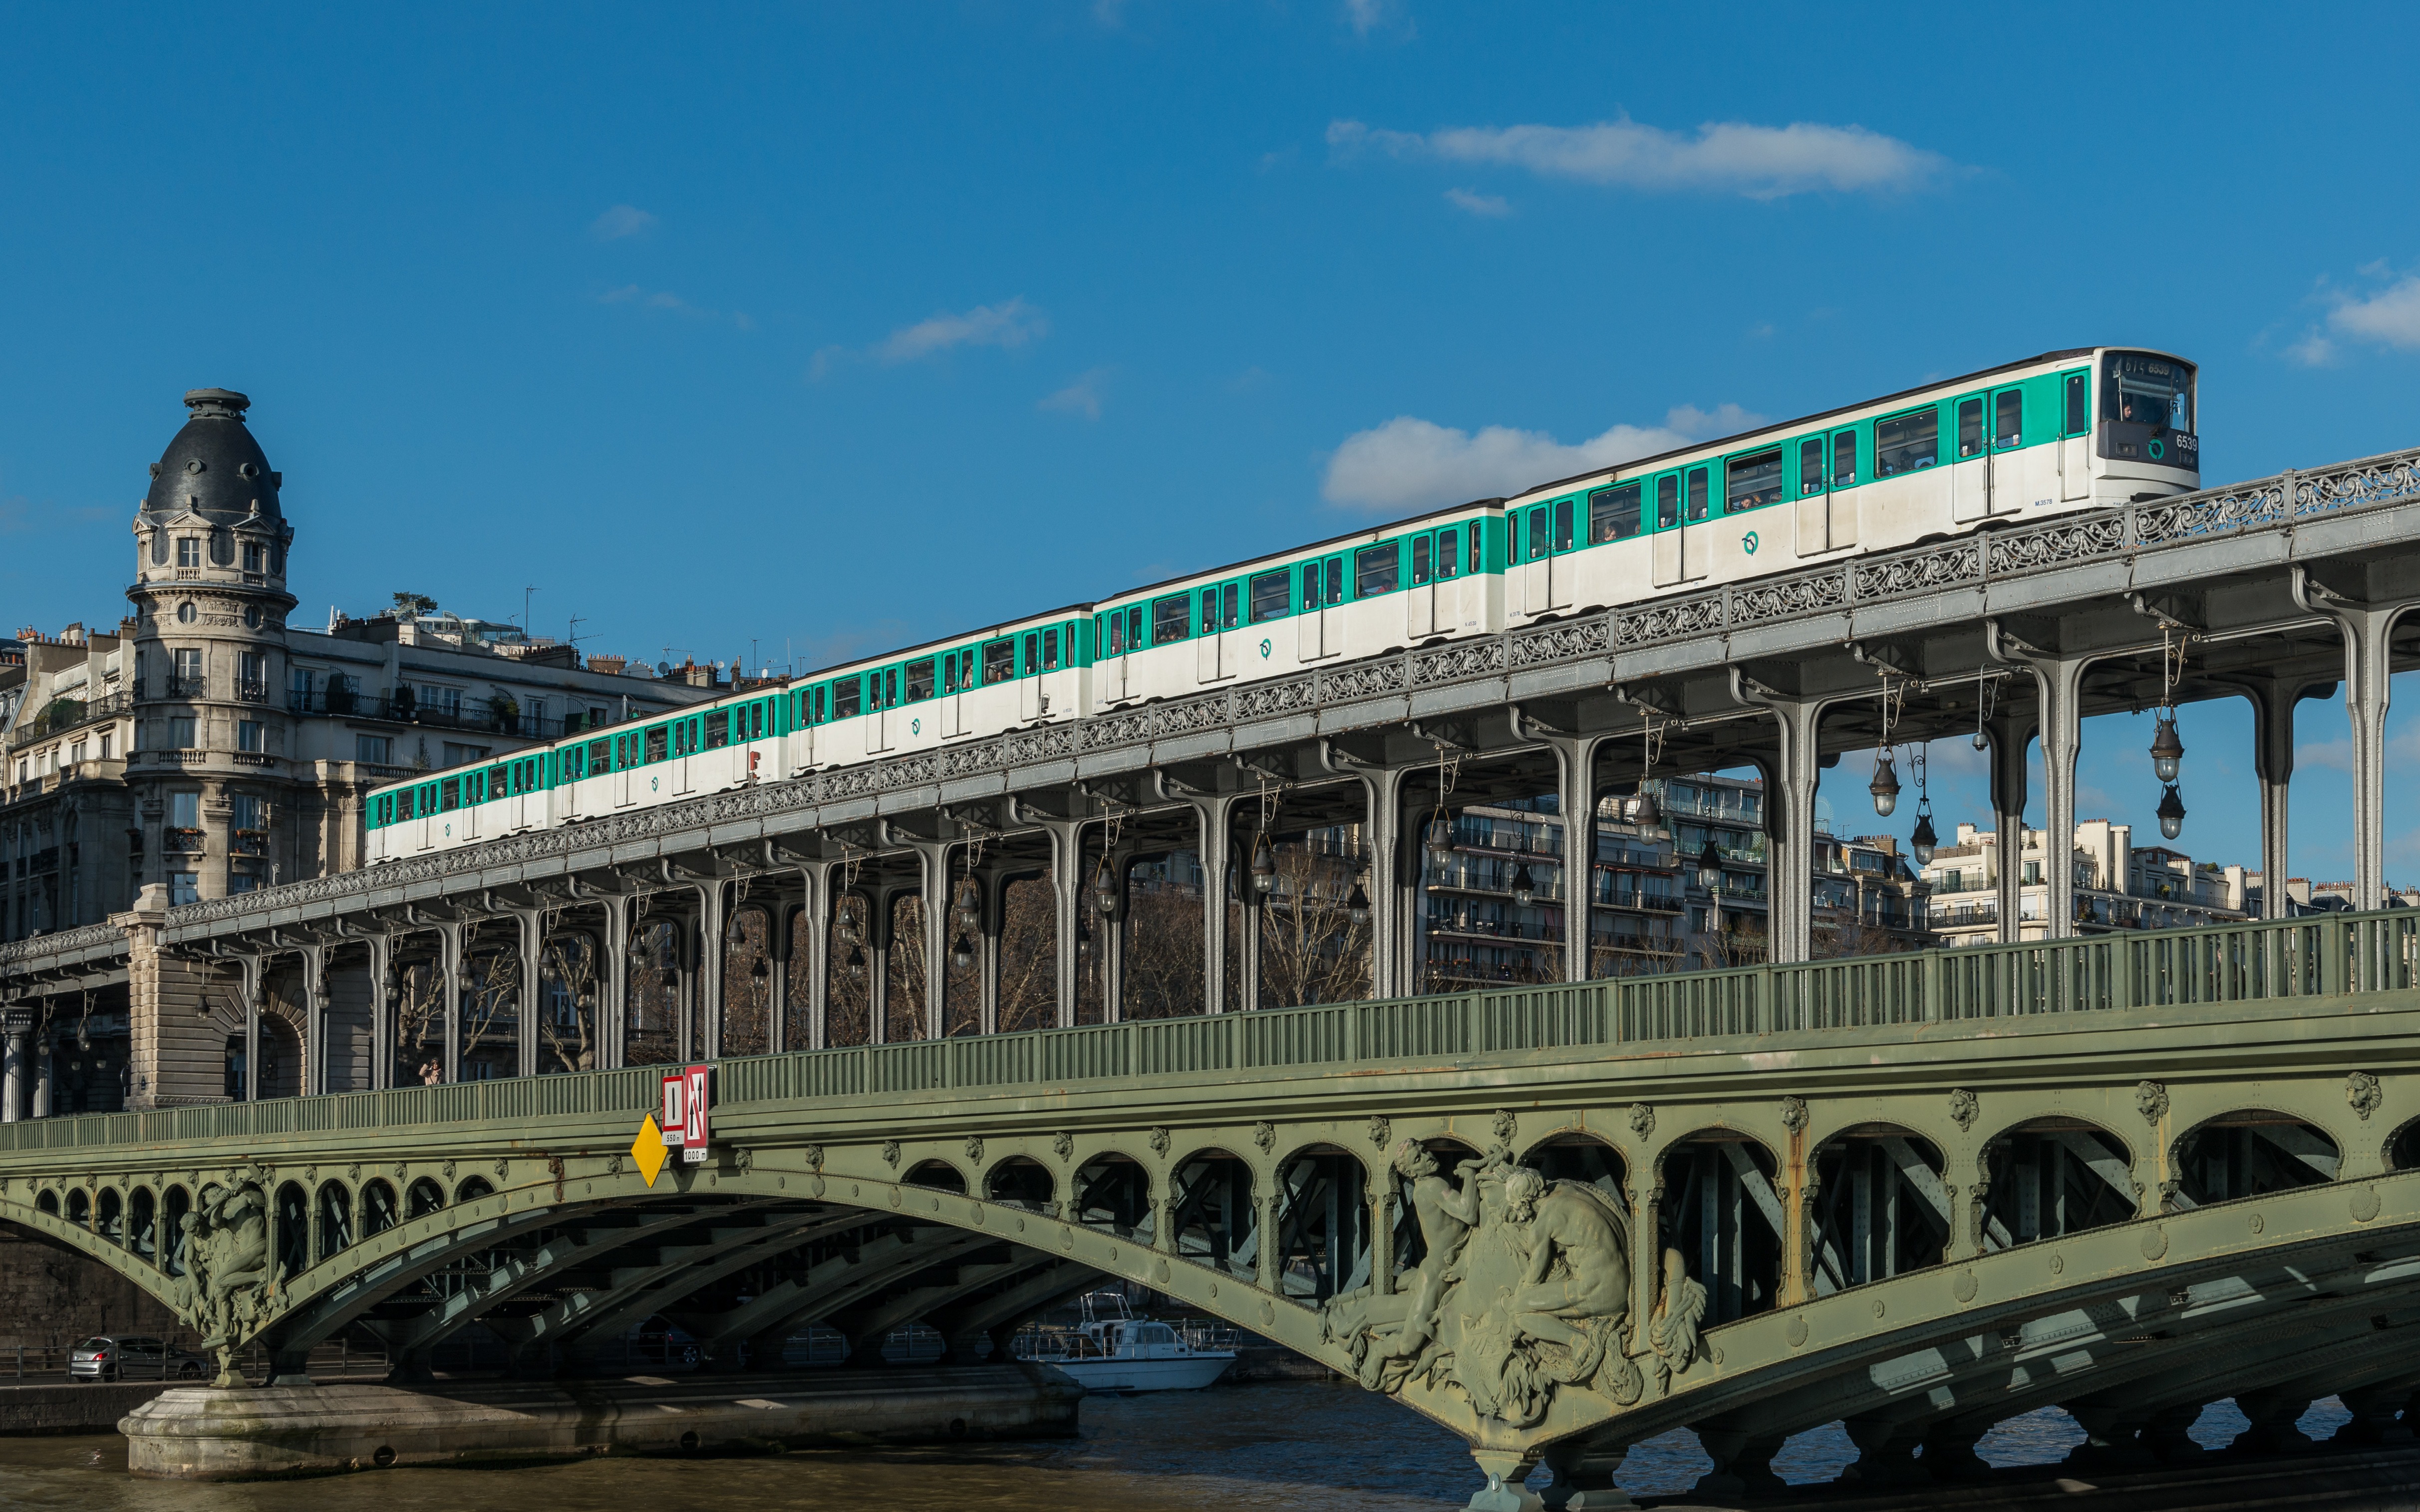 Transports et handicaps : une étude est lancée sur le métro parisien 